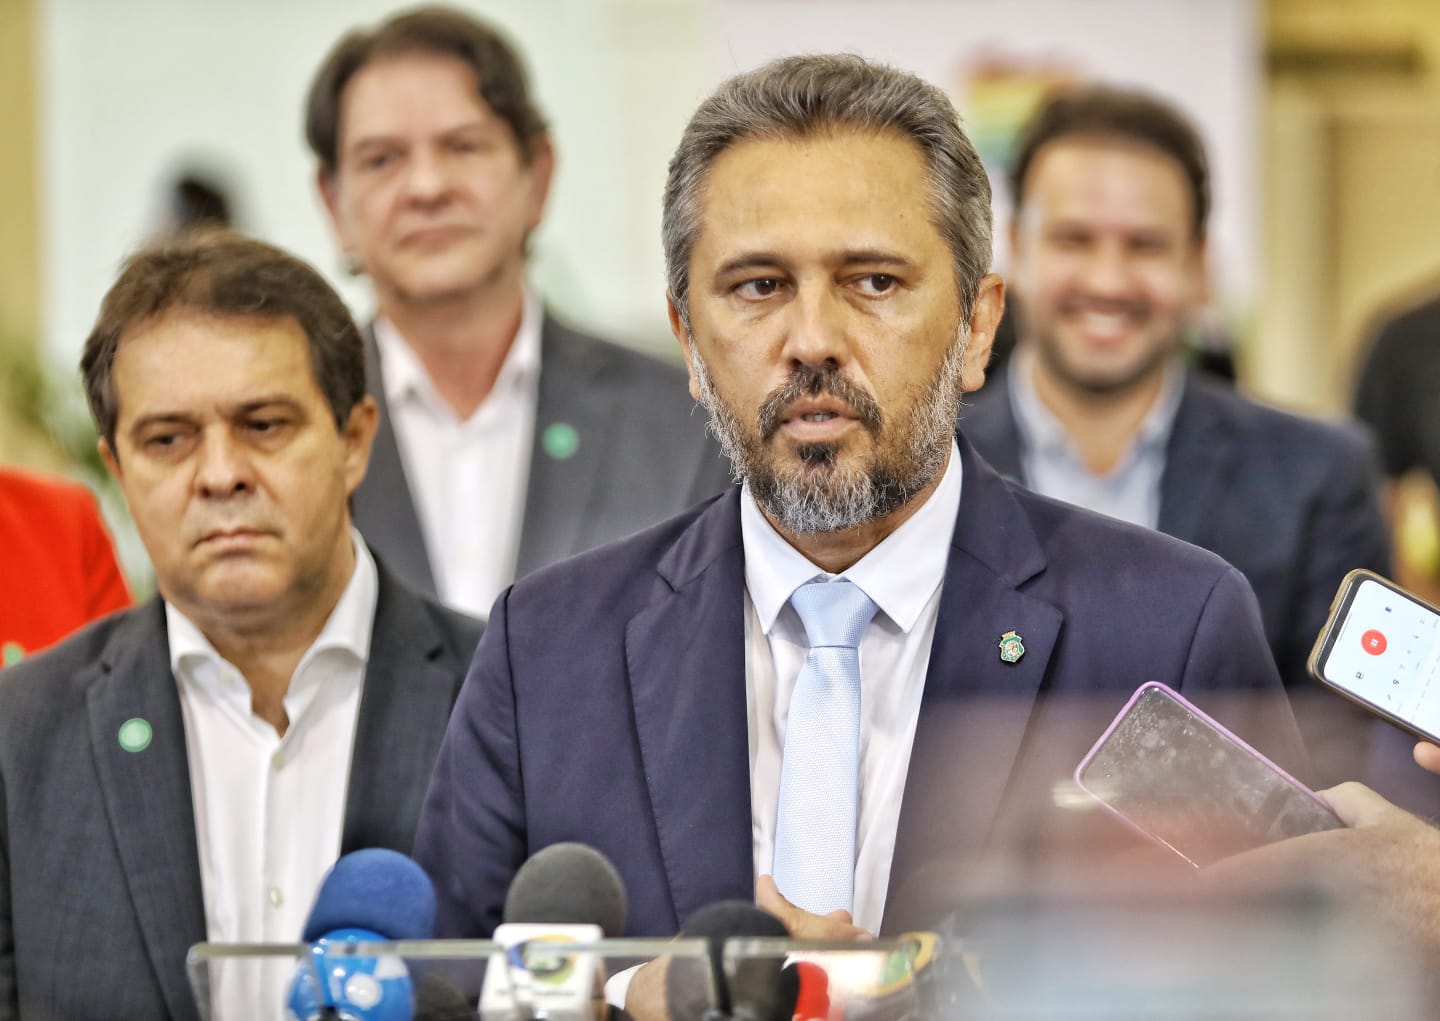 Elmano comenta possibilidade de Evandro Leitão se filiar ao PT: “eu convido há muito tempo”